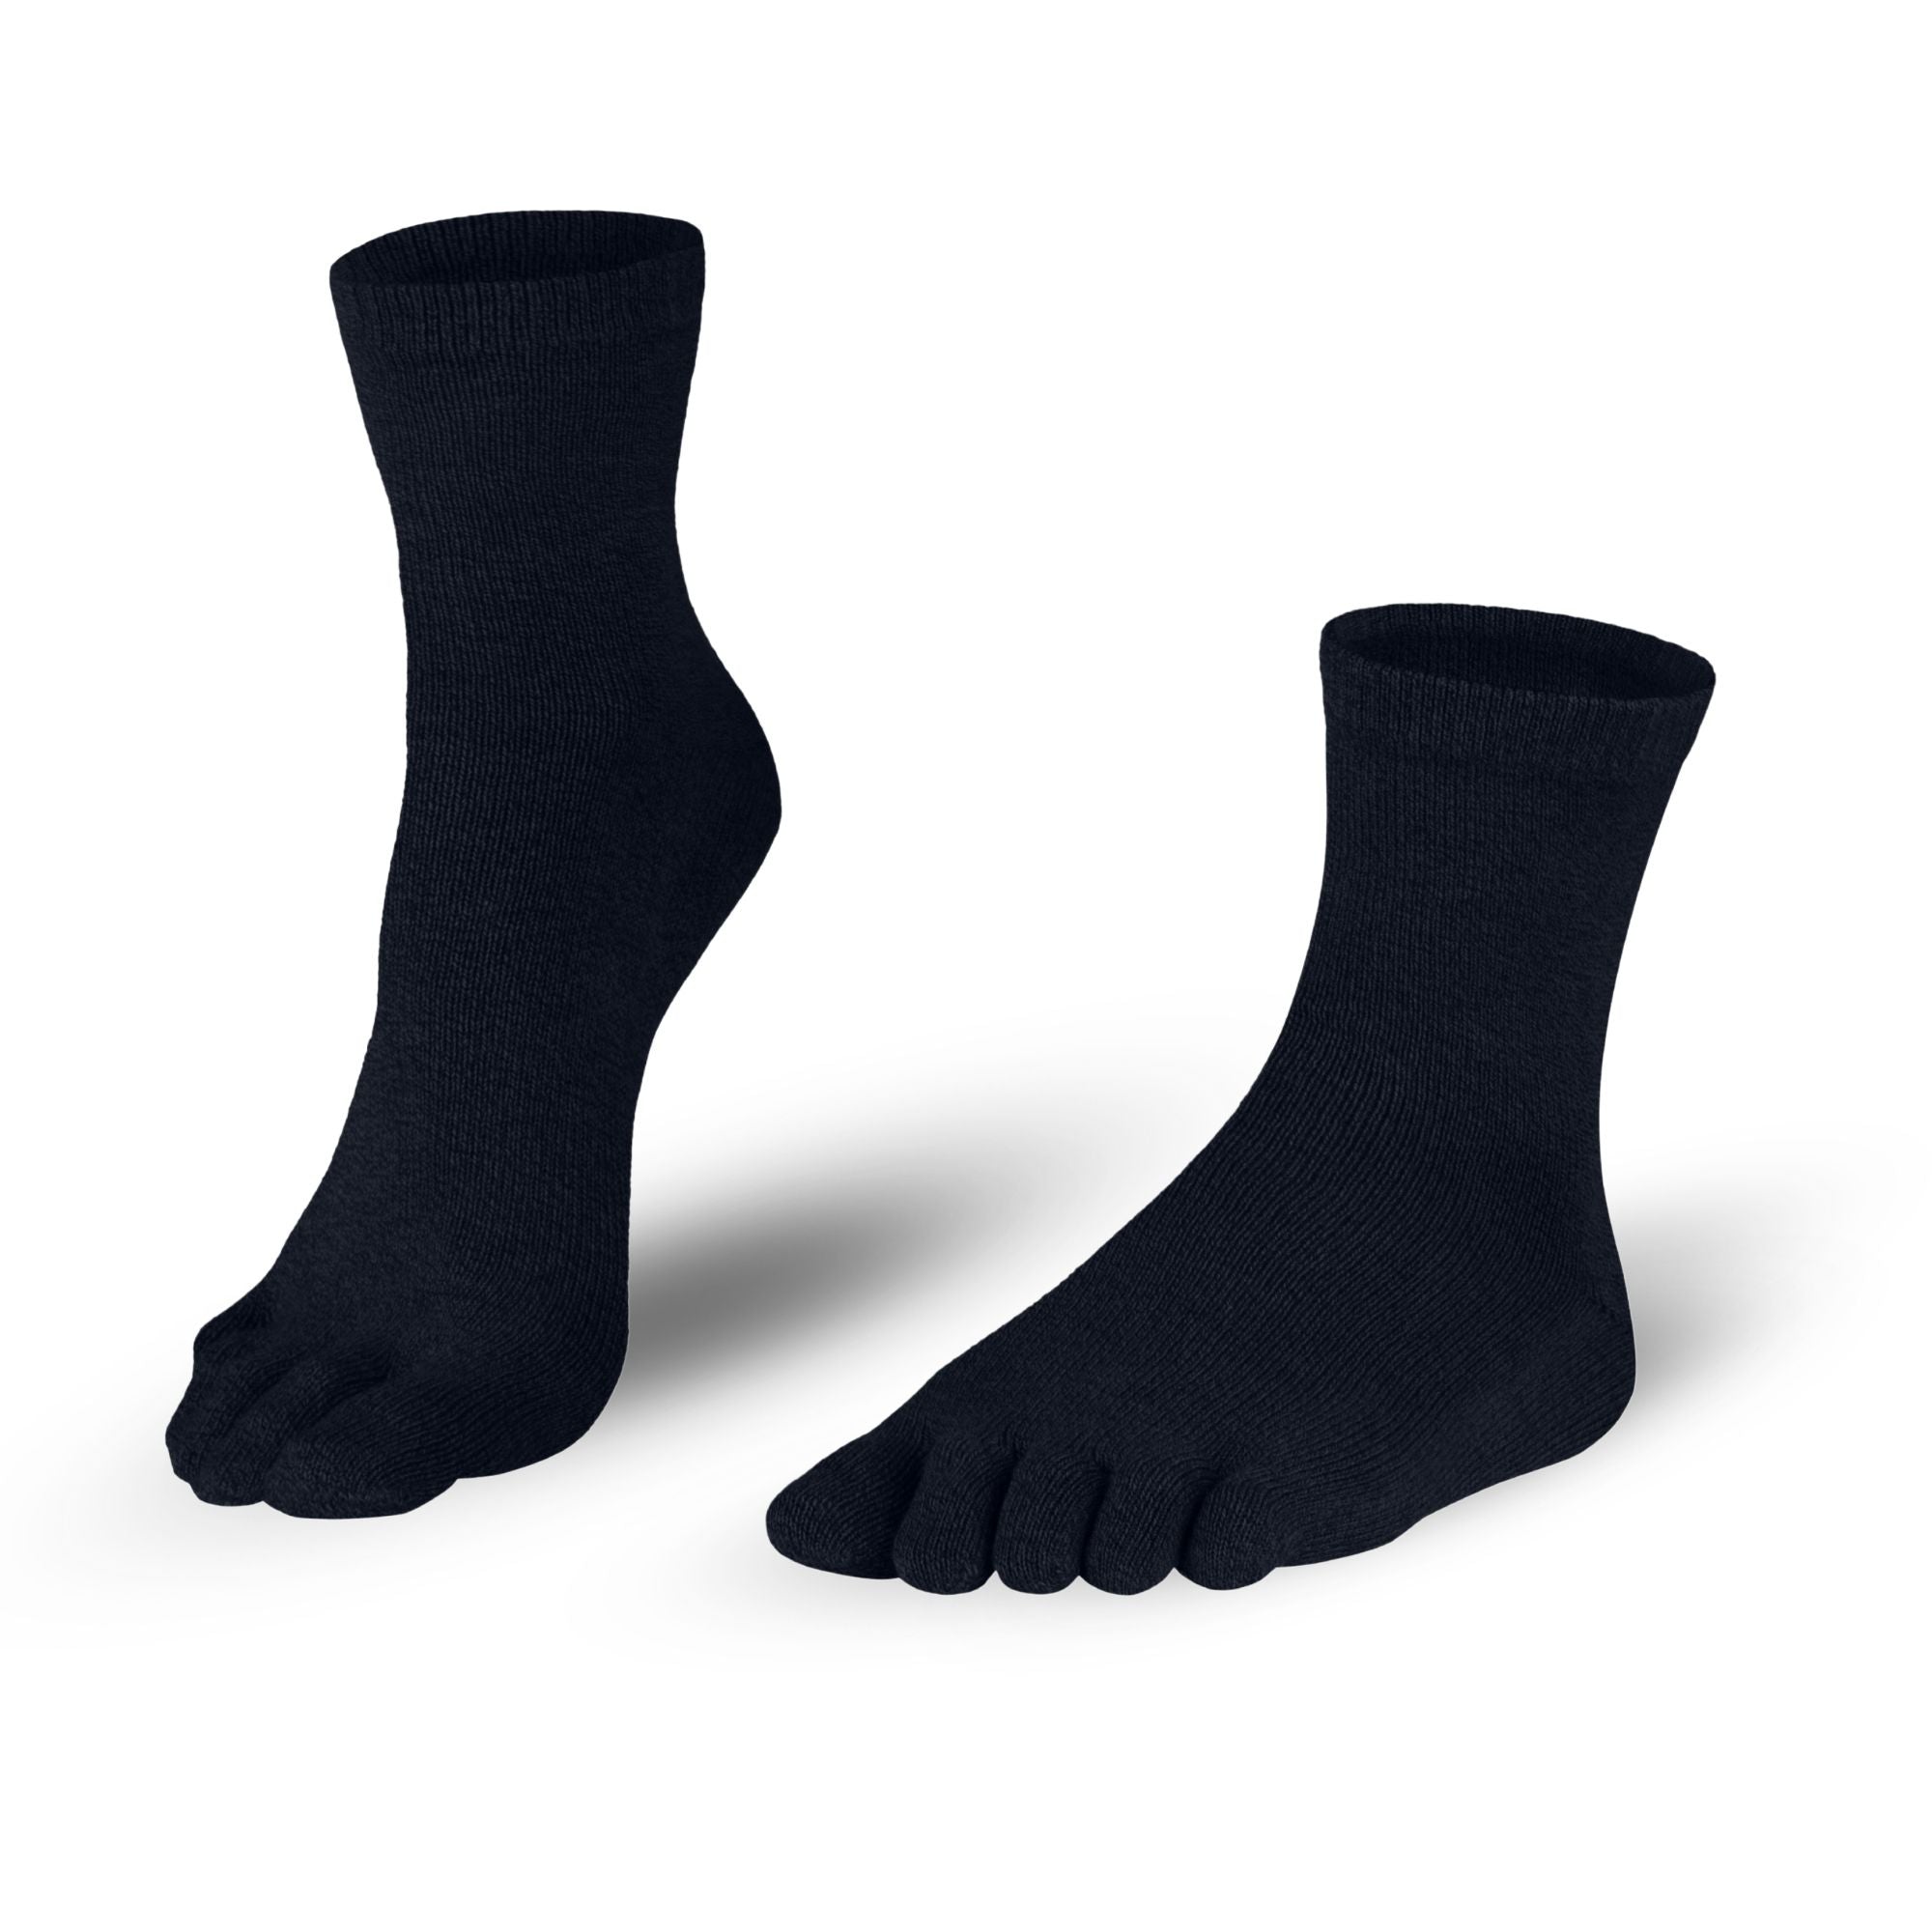 Knitido Silver Protect Midi - calze con dita corto con fibra d'argento antimicrobica per uomo e donna